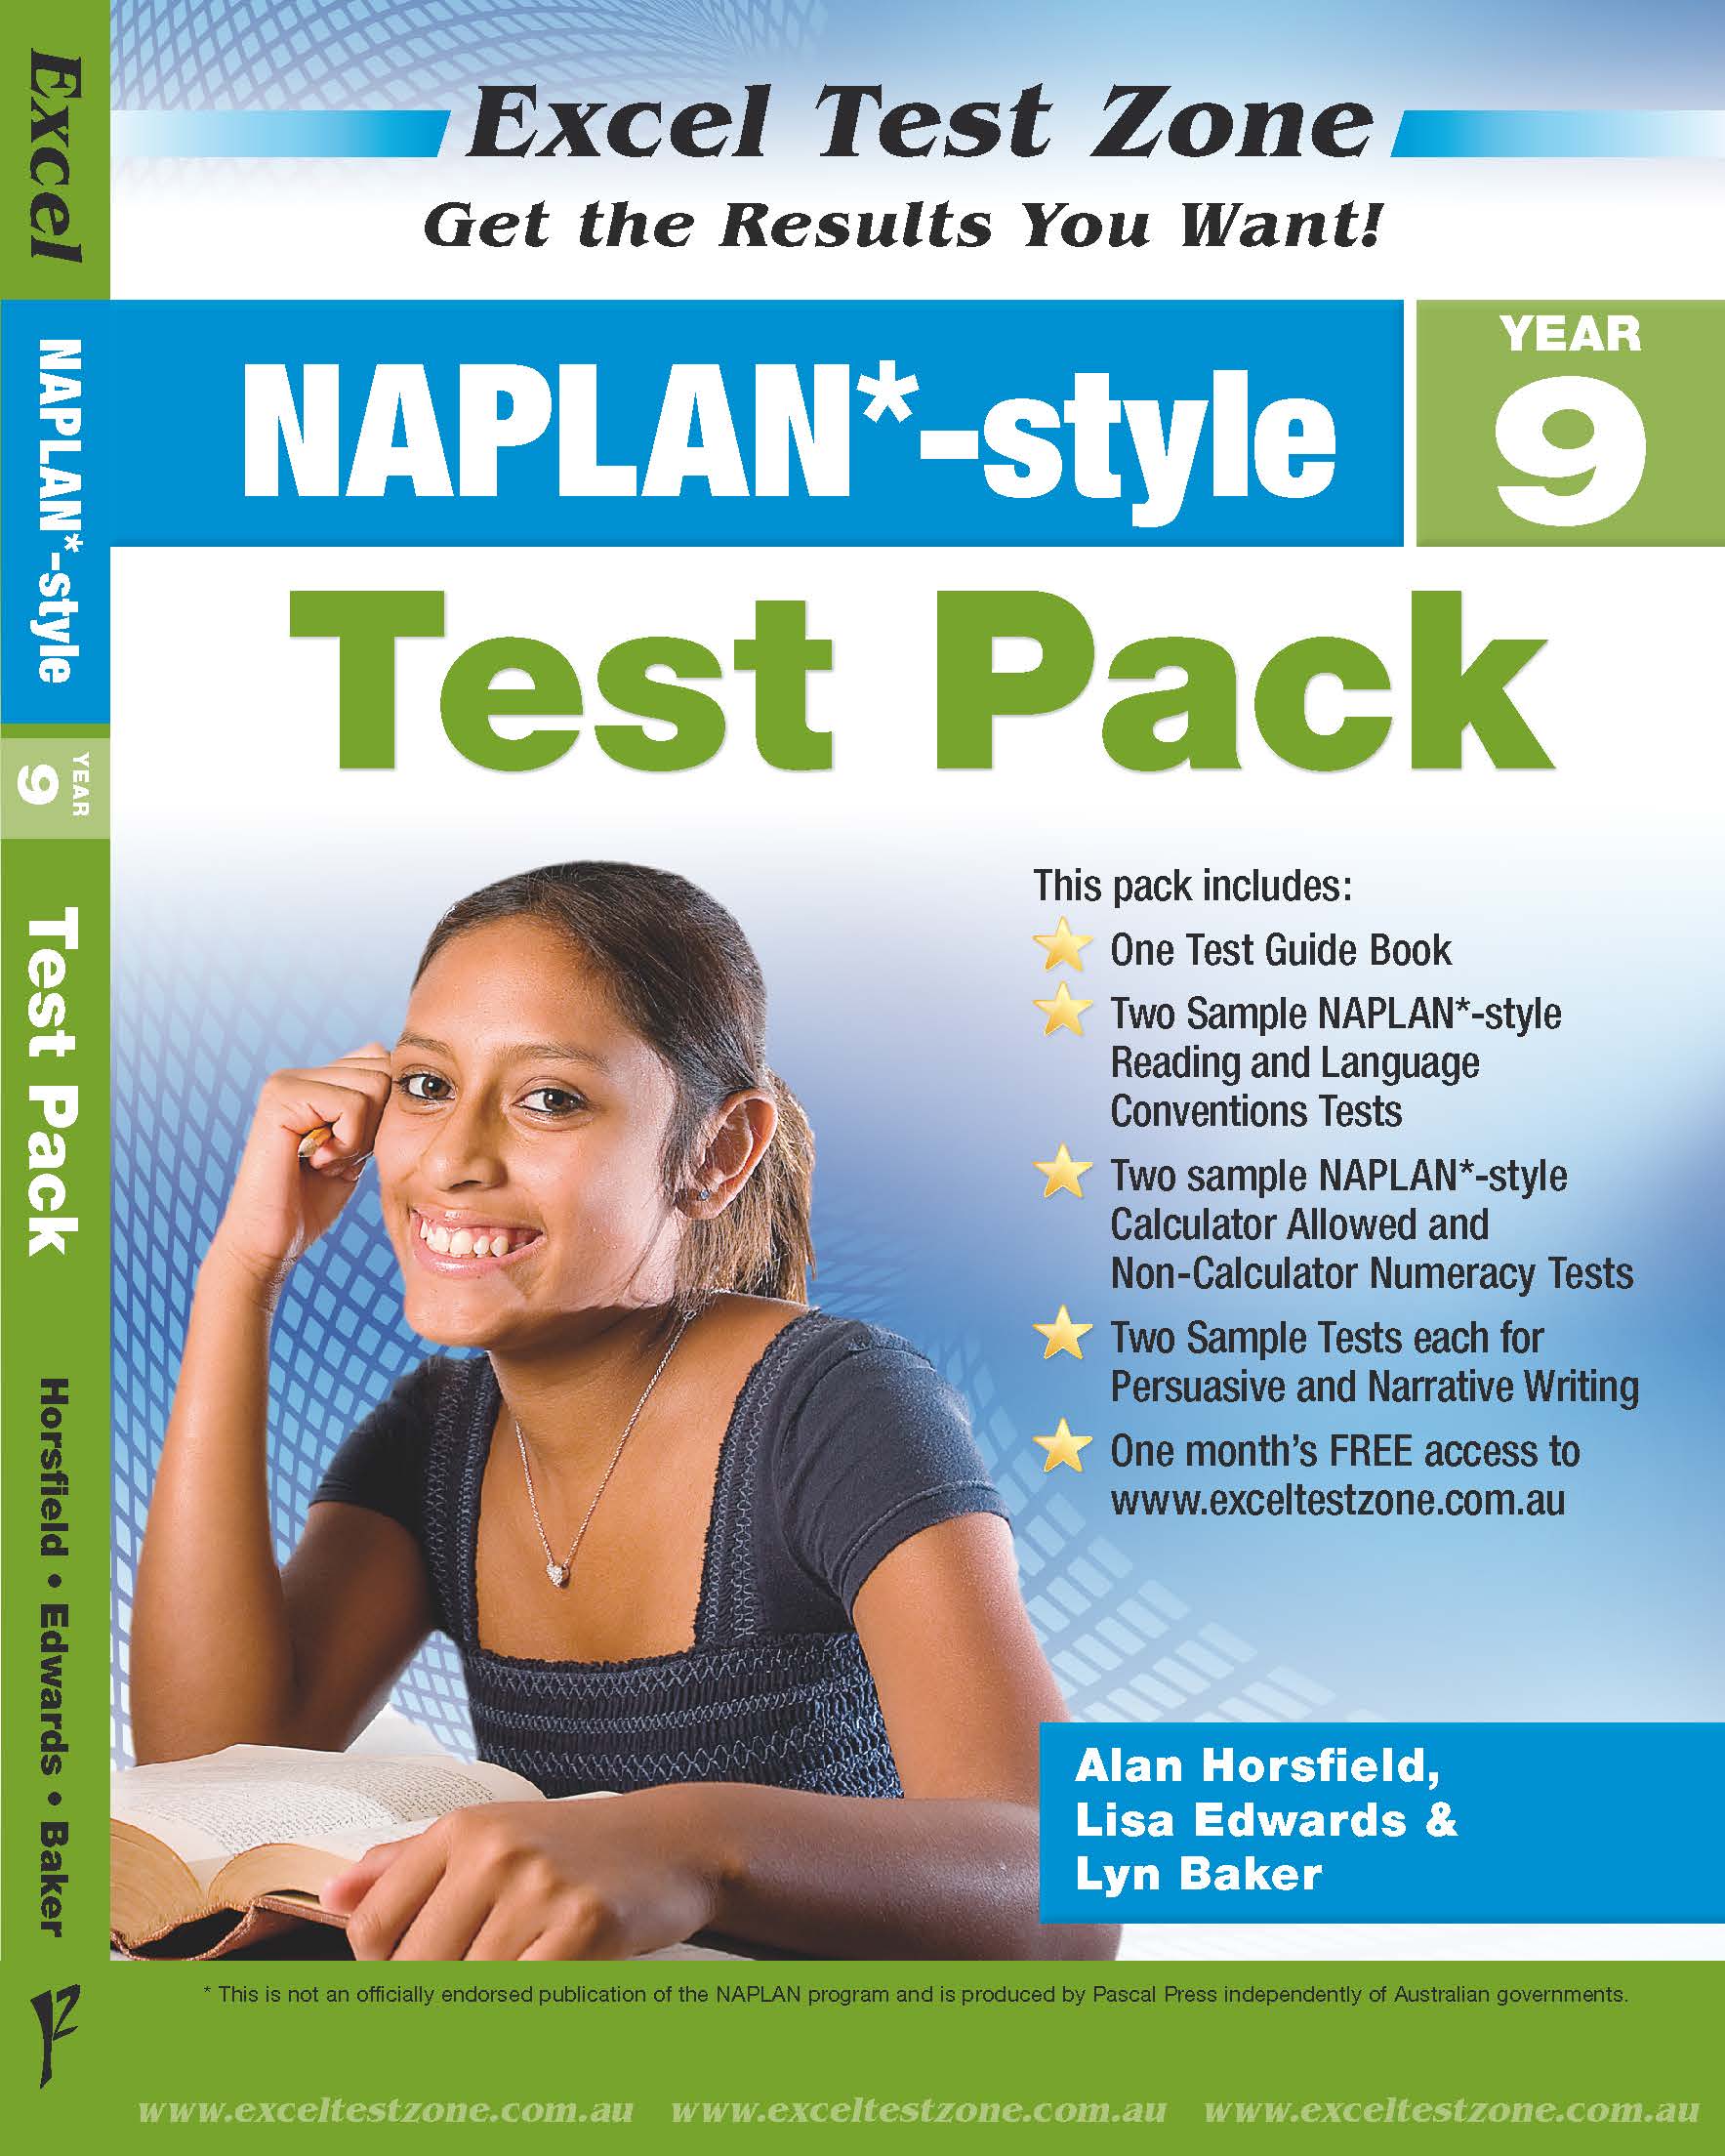 圖片 Excel Test Zone NAPLAN*-style Test Pack Year 9